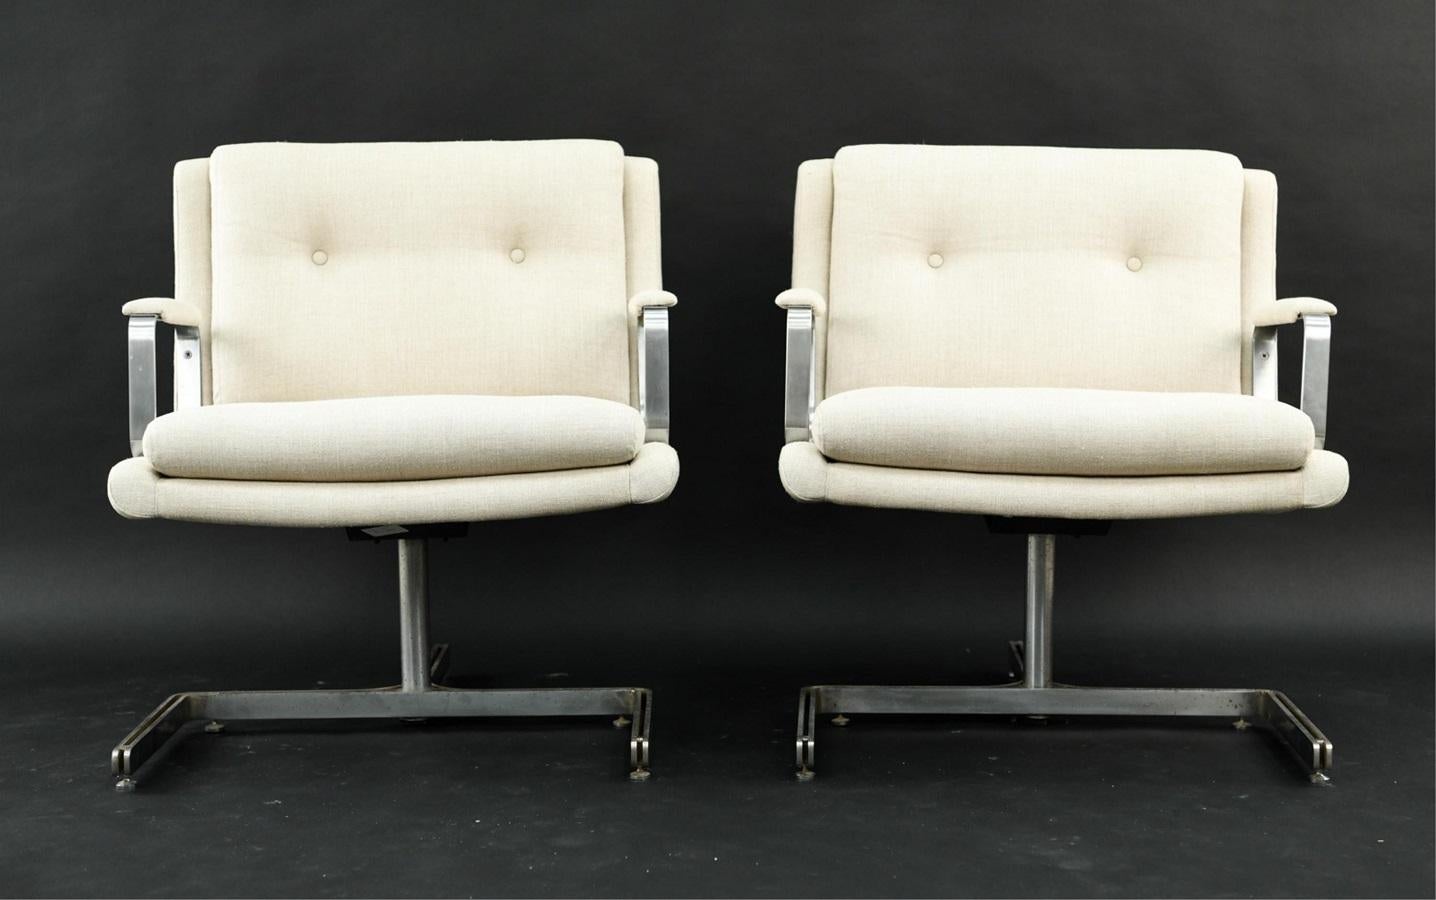 Ein Paar Raphael-Raffel-Sessel von 1974. Die Stühle sind mit einer cremefarbenen Leinenmischung gepolstert und haben ein dreibeiniges Gestell aus Edelstahl.